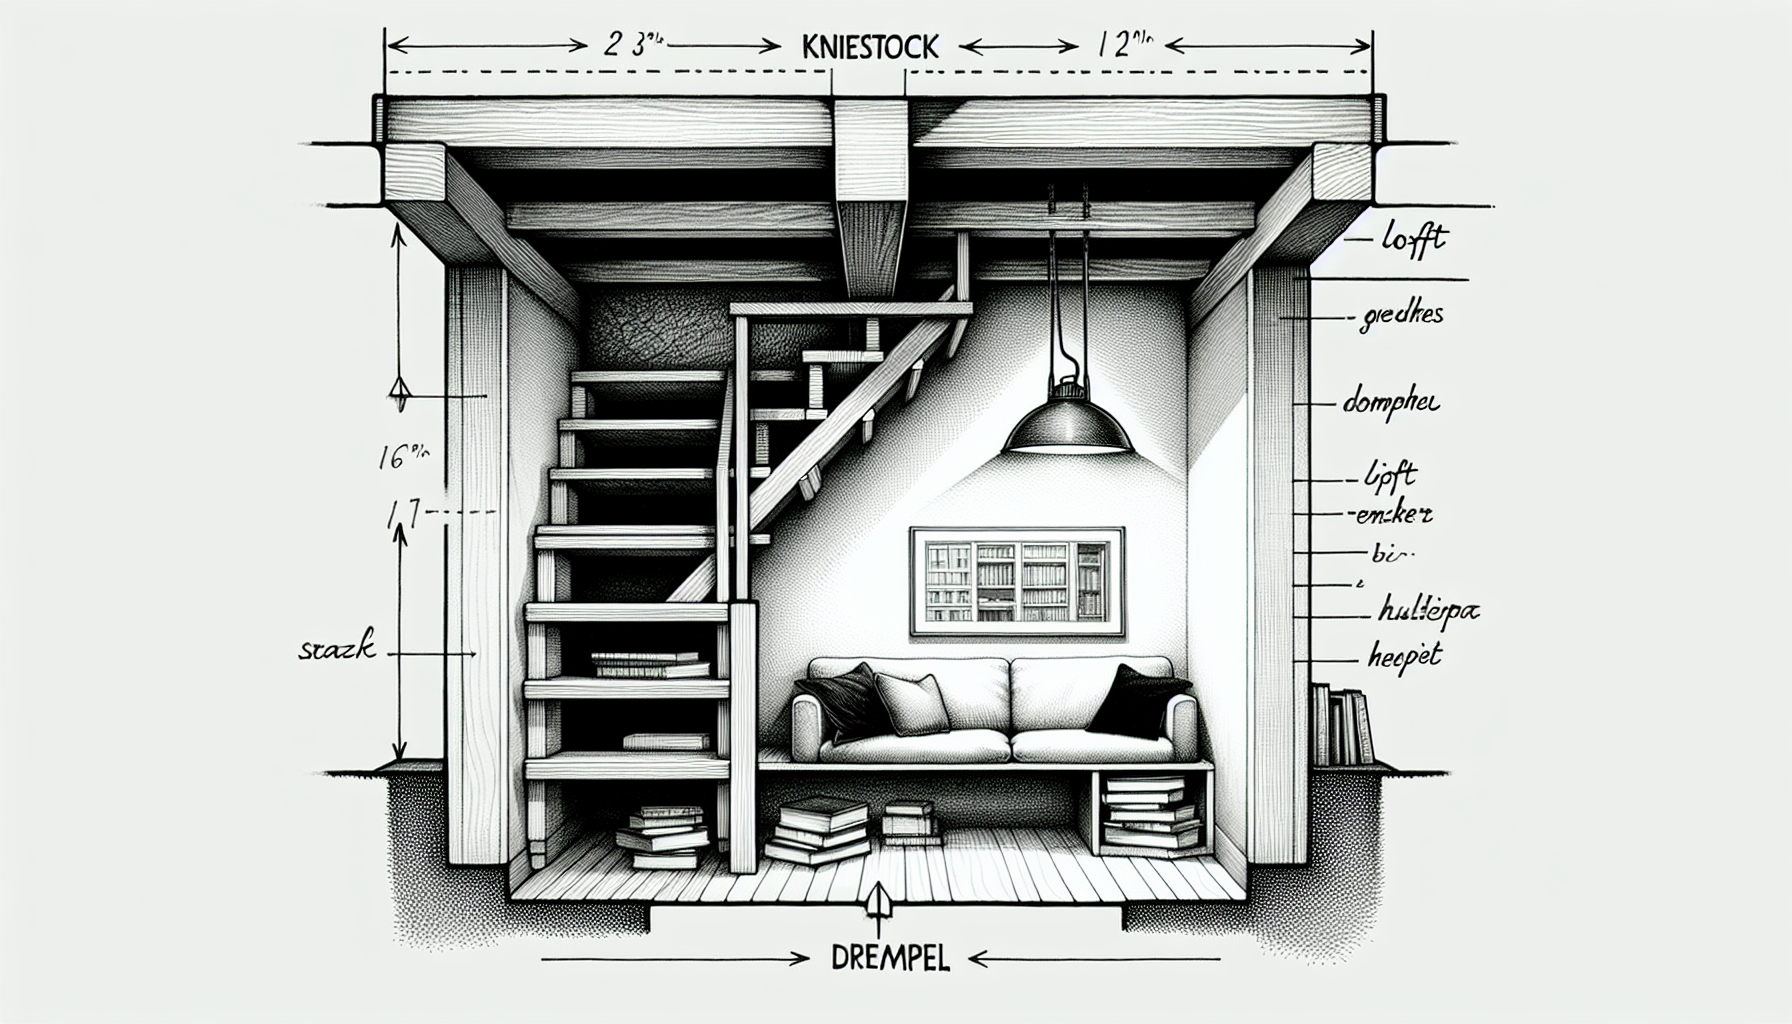 Illustration eines Dachgeschosses mit Kniestock und Drempel